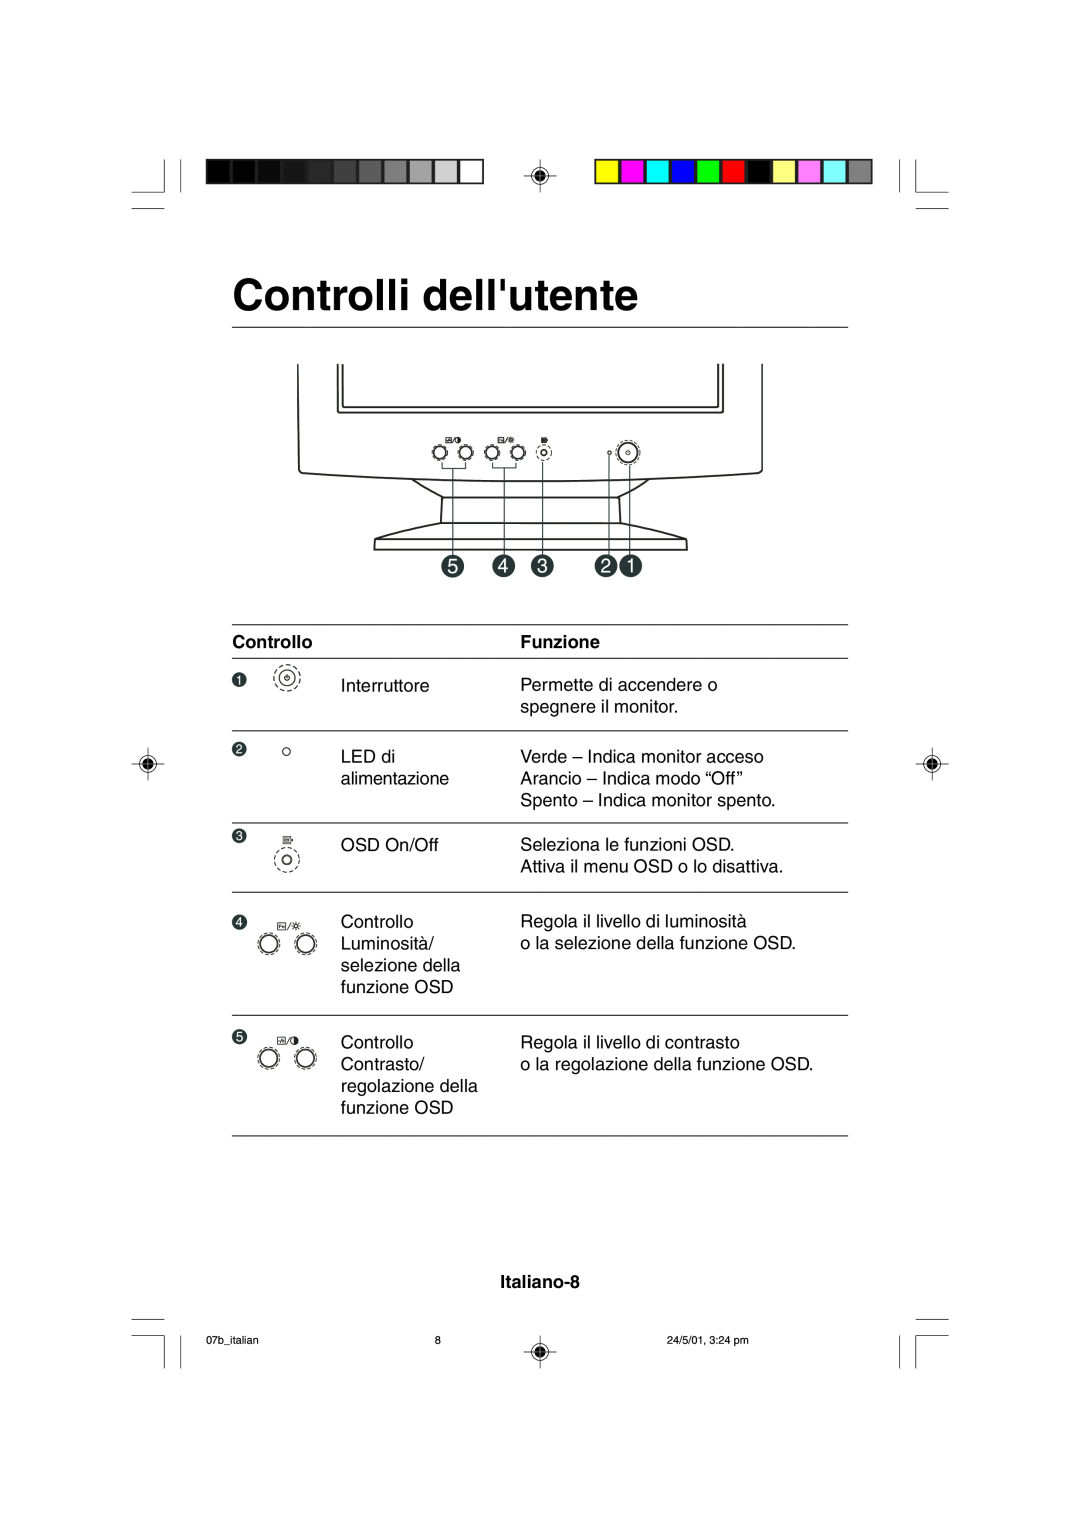 Mitsubishi Electronics M557 user manual Controlli dellutente, Controllo, Funzione, Italiano-8 